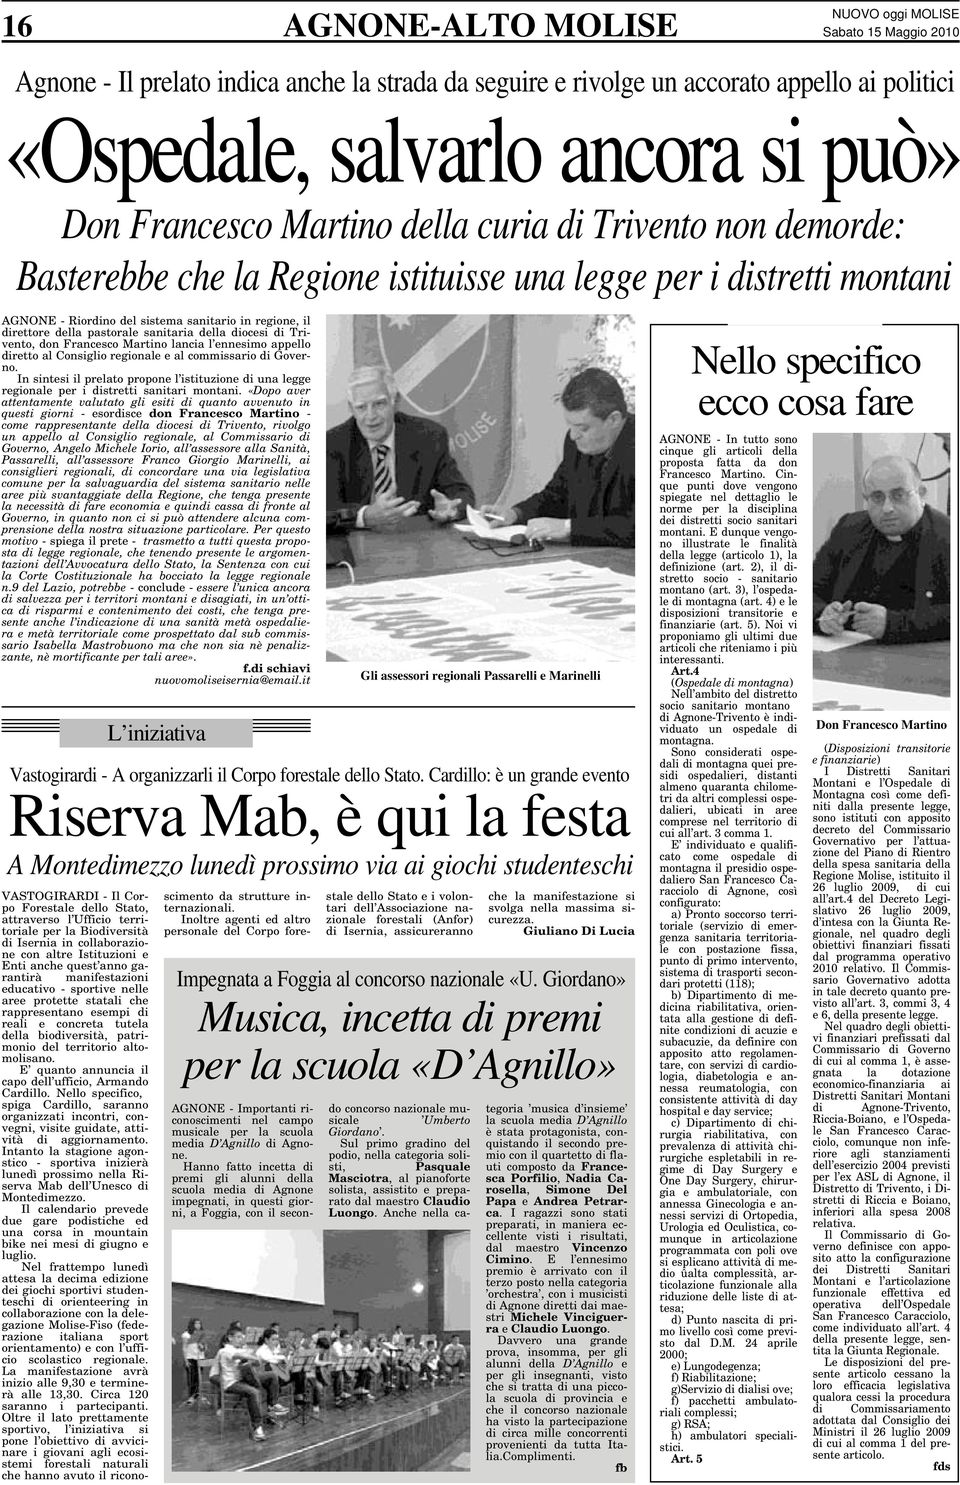 diocesi di Trivento, don Francesco Martino lancia l ennesimo appello diretto al Consiglio regionale e al commissario di Governo.